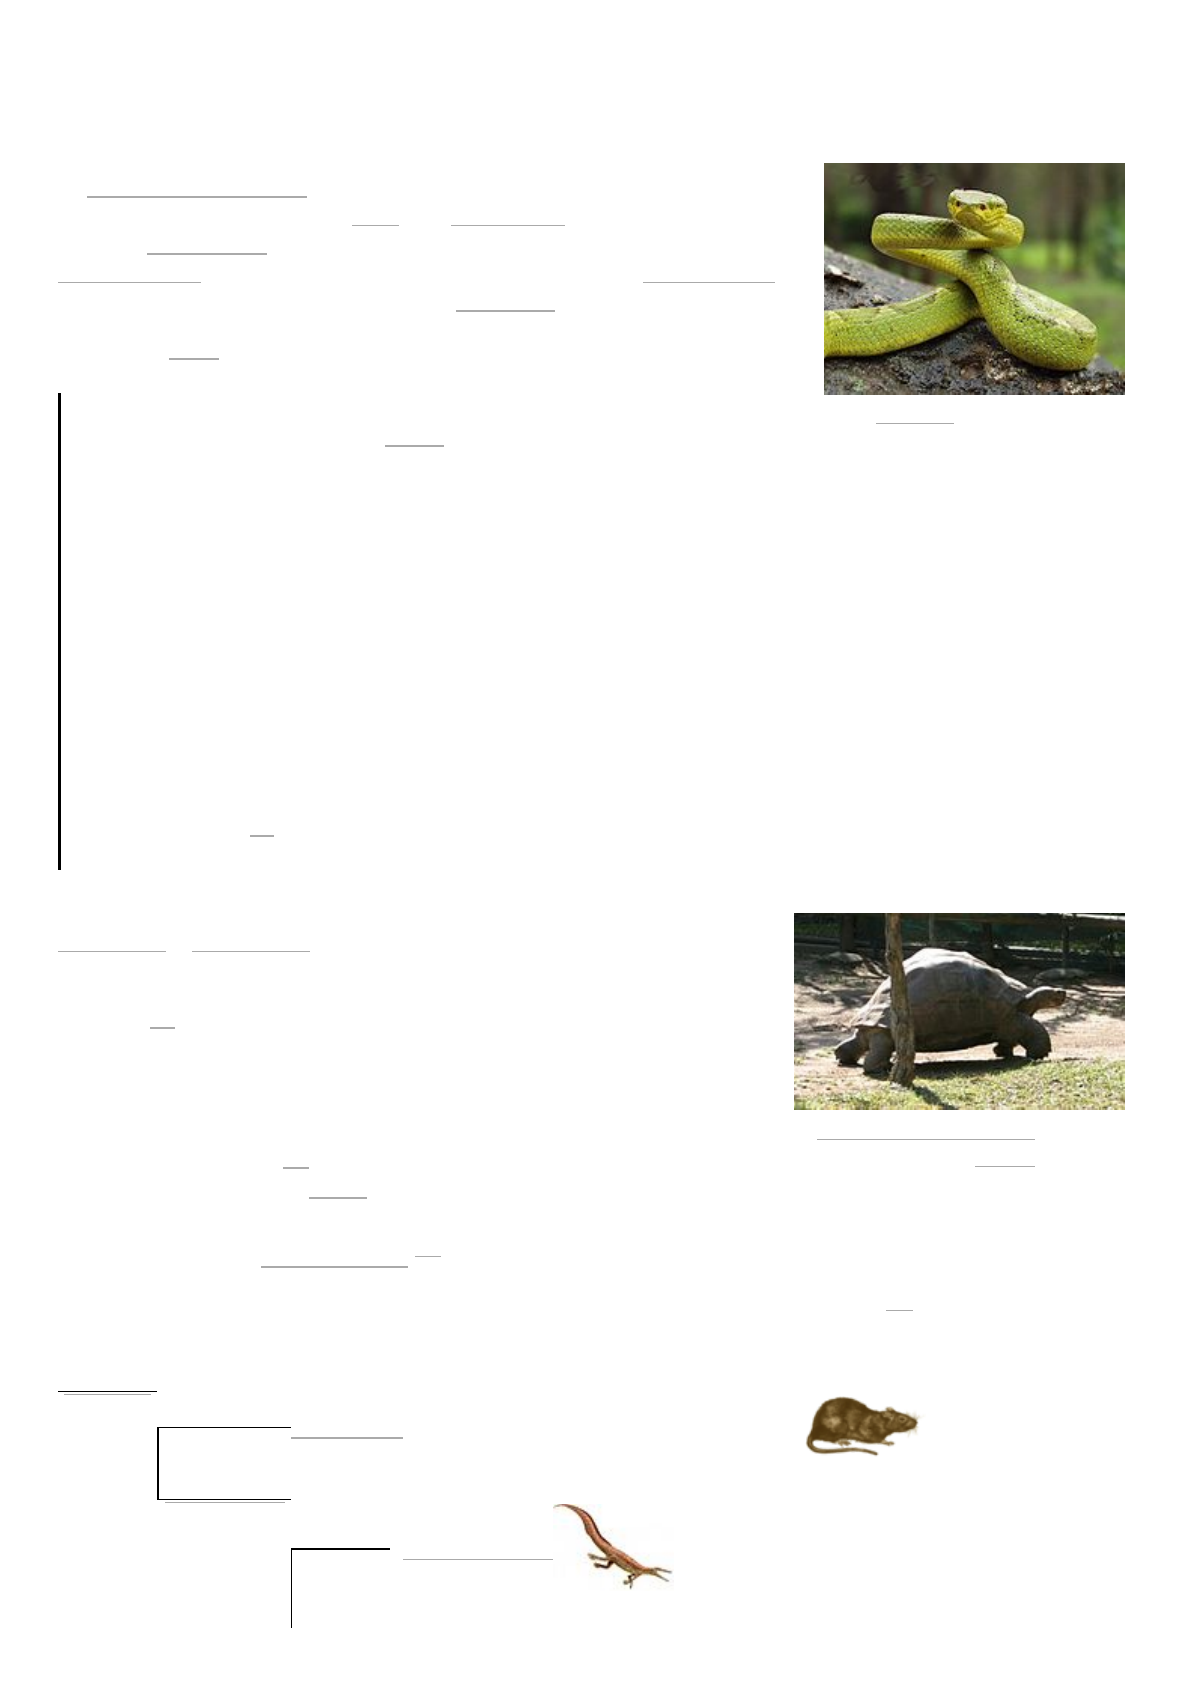 Serpente – Wikipédia, a enciclopédia livre